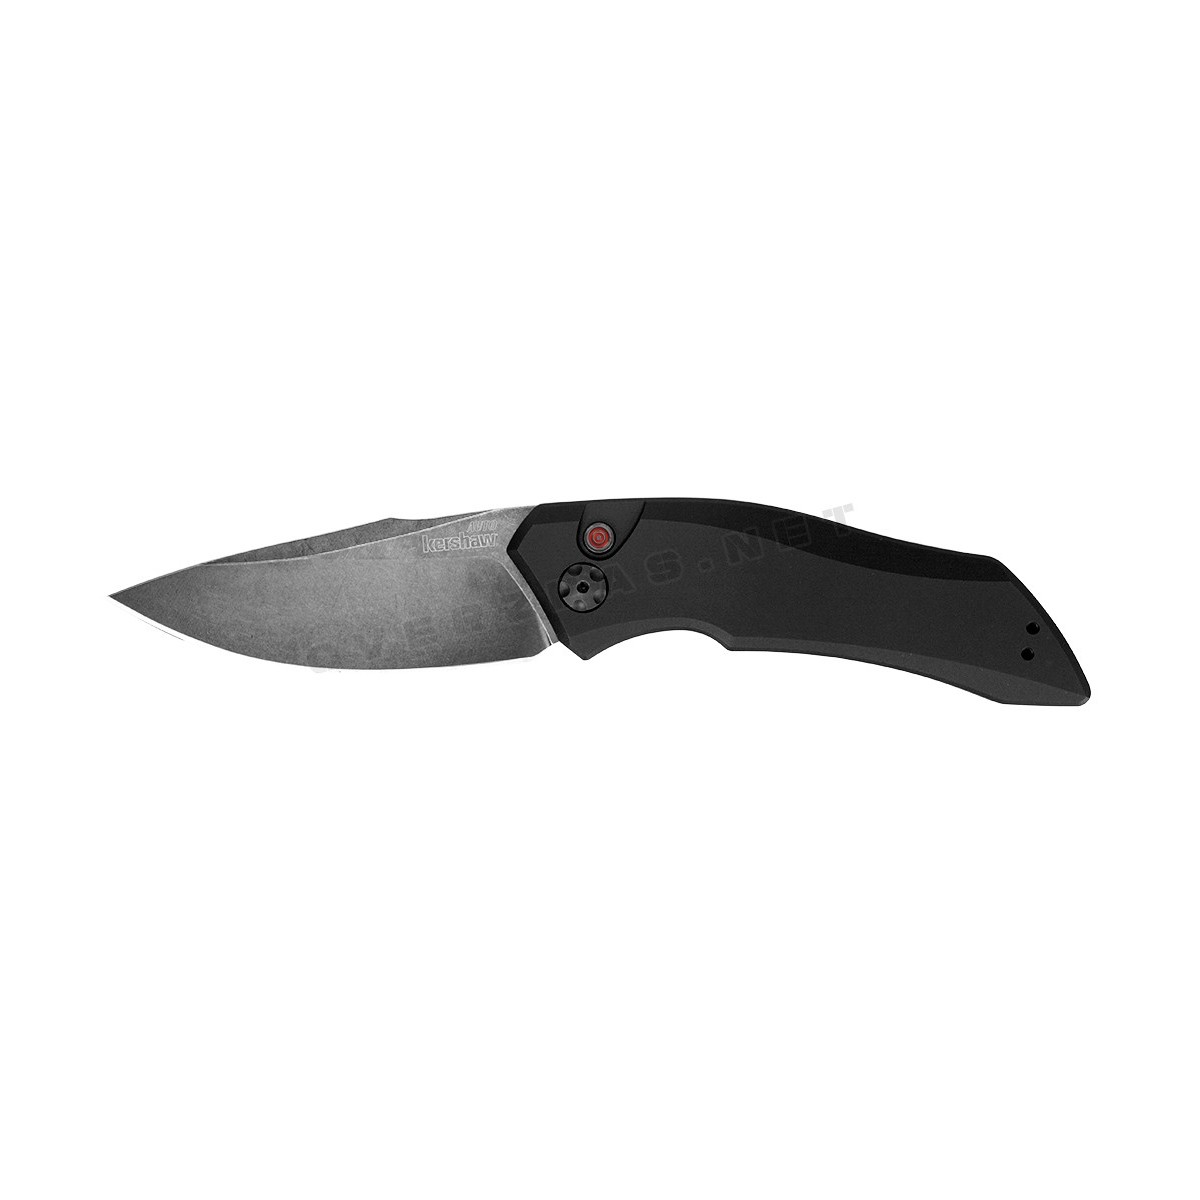 มีดออโต้ Kershaw Launch 1 Automatic Knife Black Aluminum (3.4" BlackWash) 7100BW